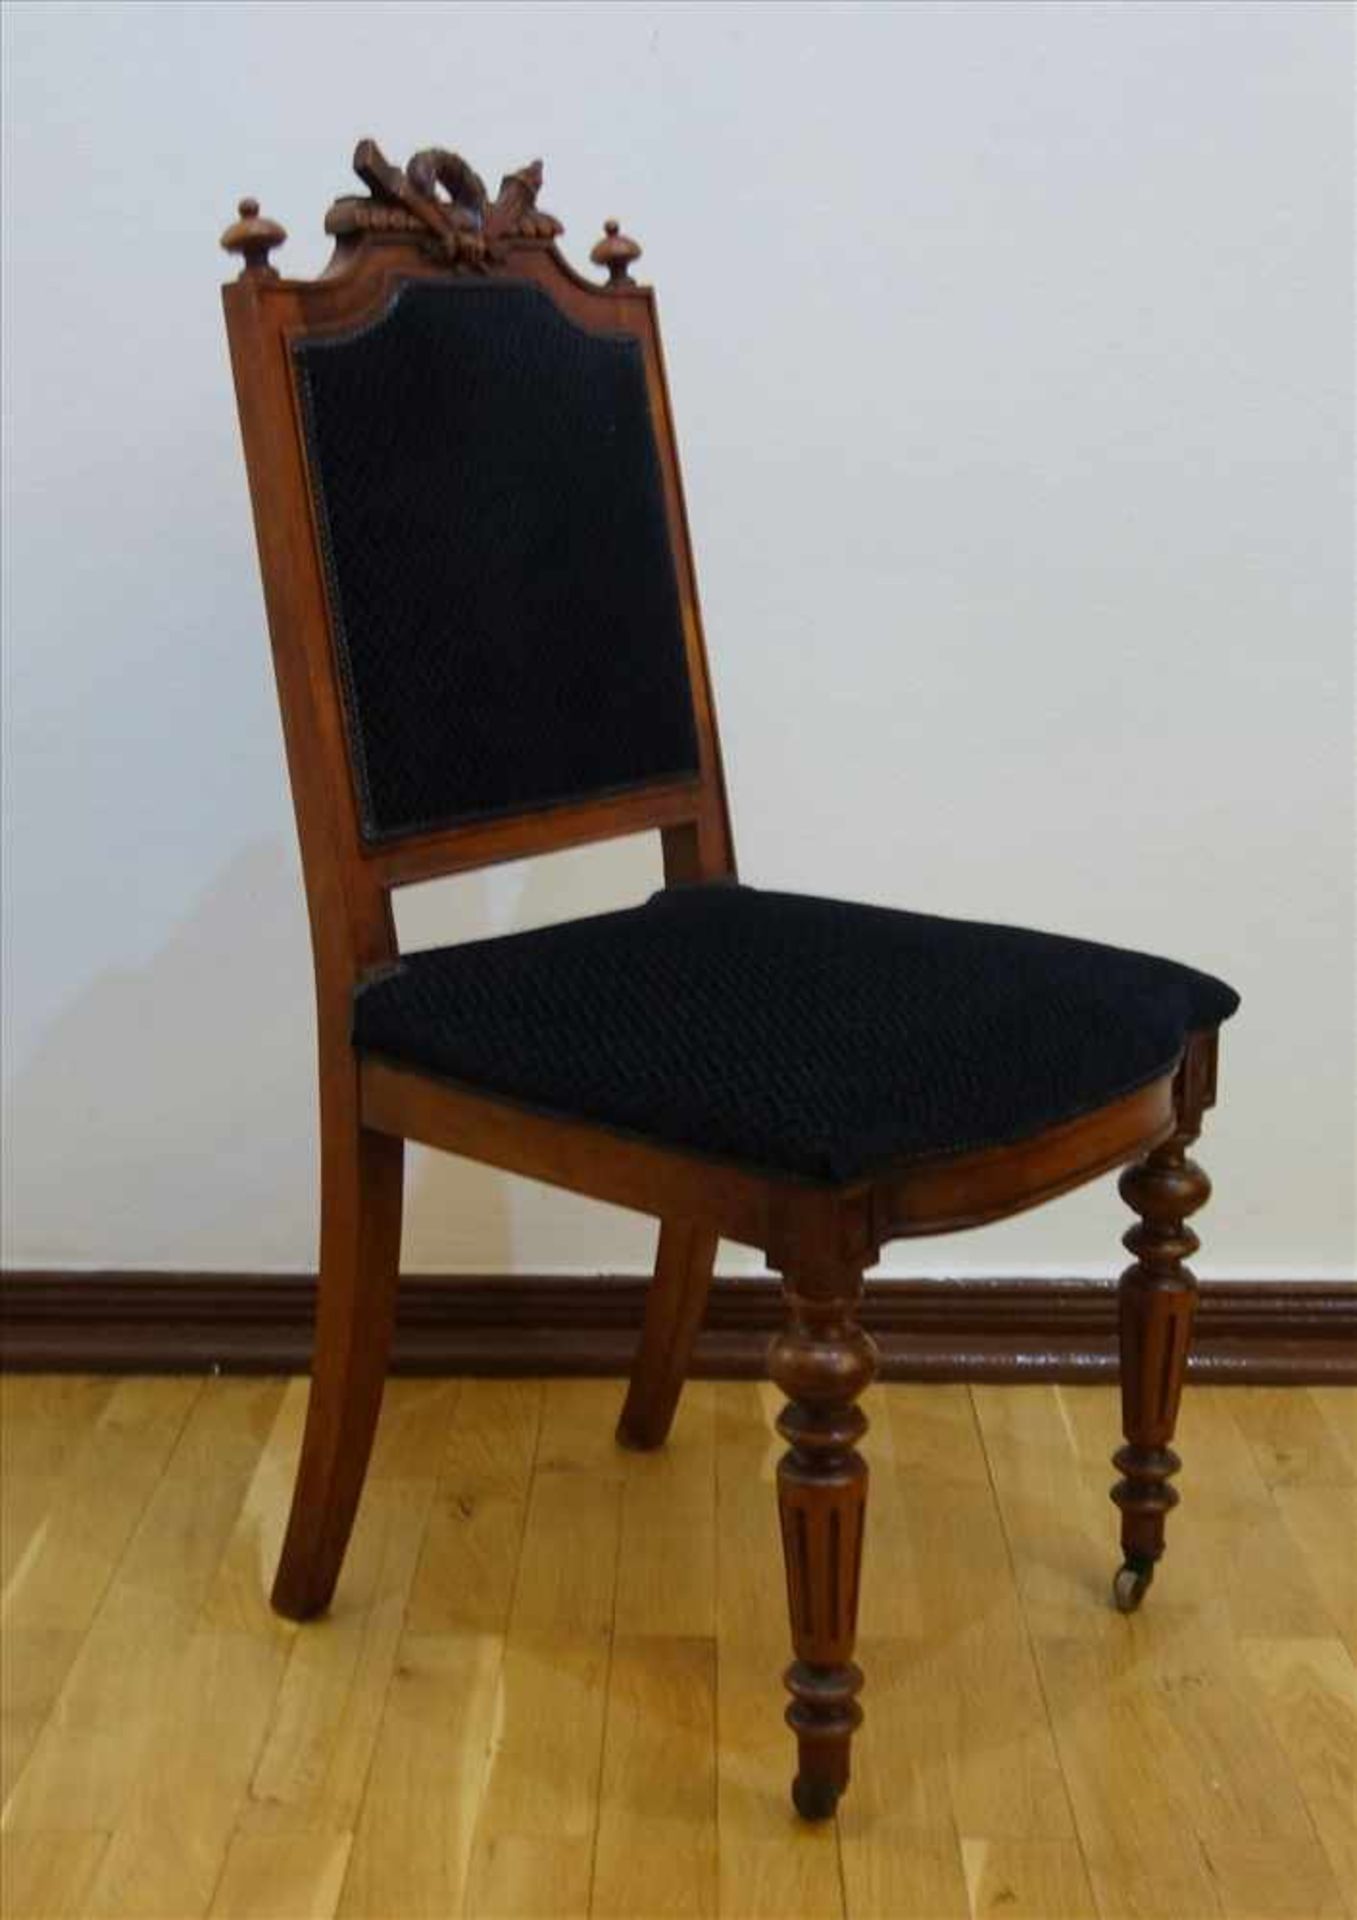 4 Stühle, Gründerzeit, um 1880, Nussbaum, Lehne und Sitzfläche gepolstert, vordere Beine mit Rollen, - Bild 2 aus 2